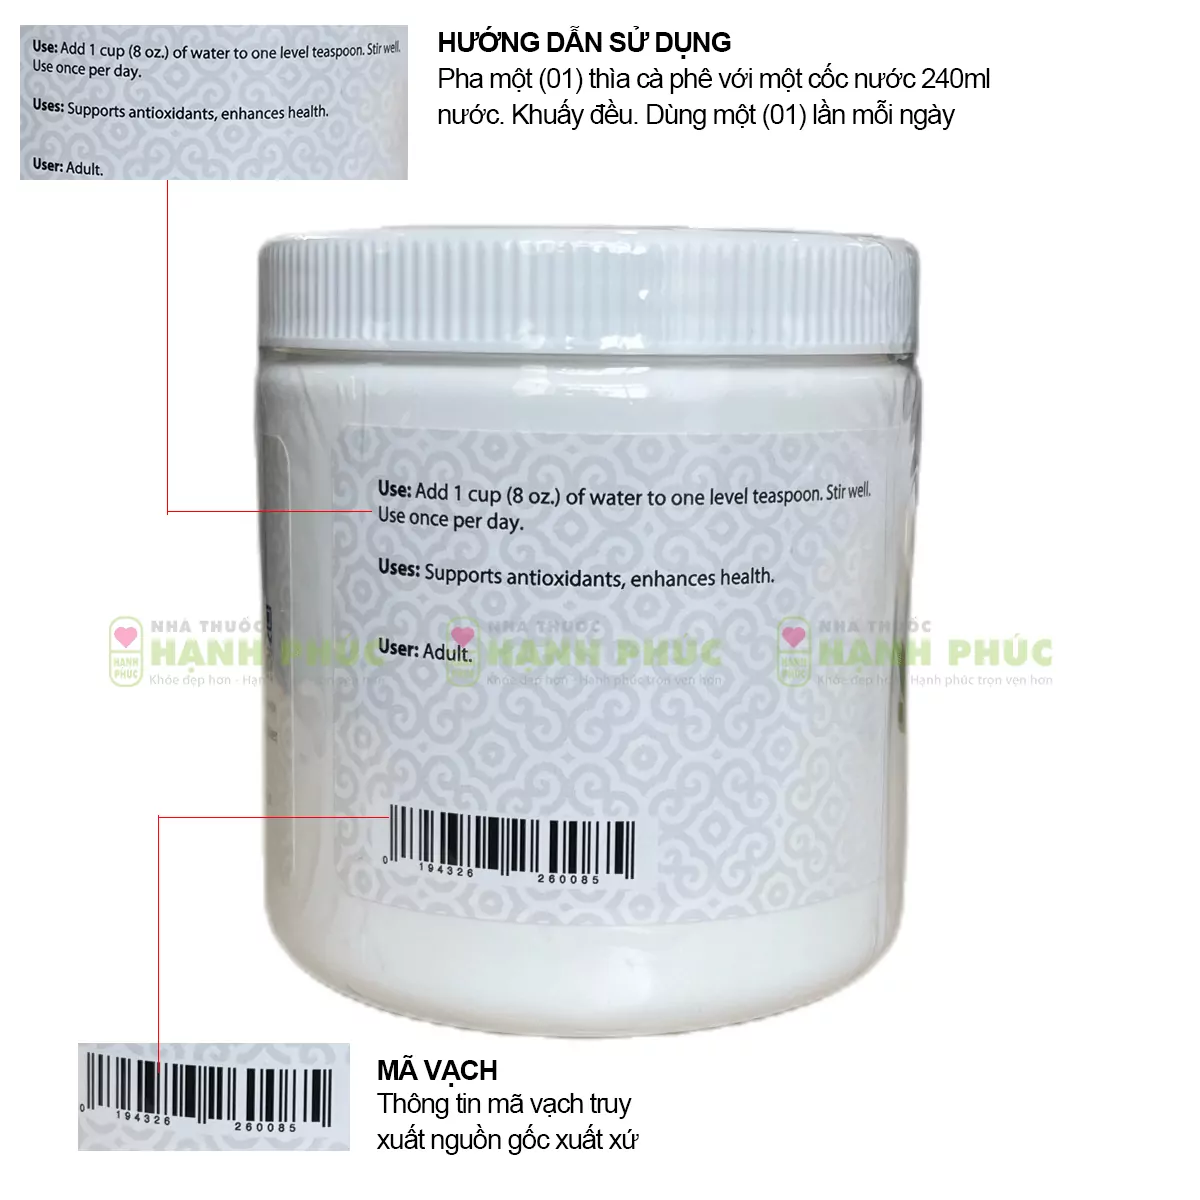 Hướng dẫn sử dụng và mã vạch in trên thân sản phẩm bột diệp lục Unicity Super Chlorophyll Powder